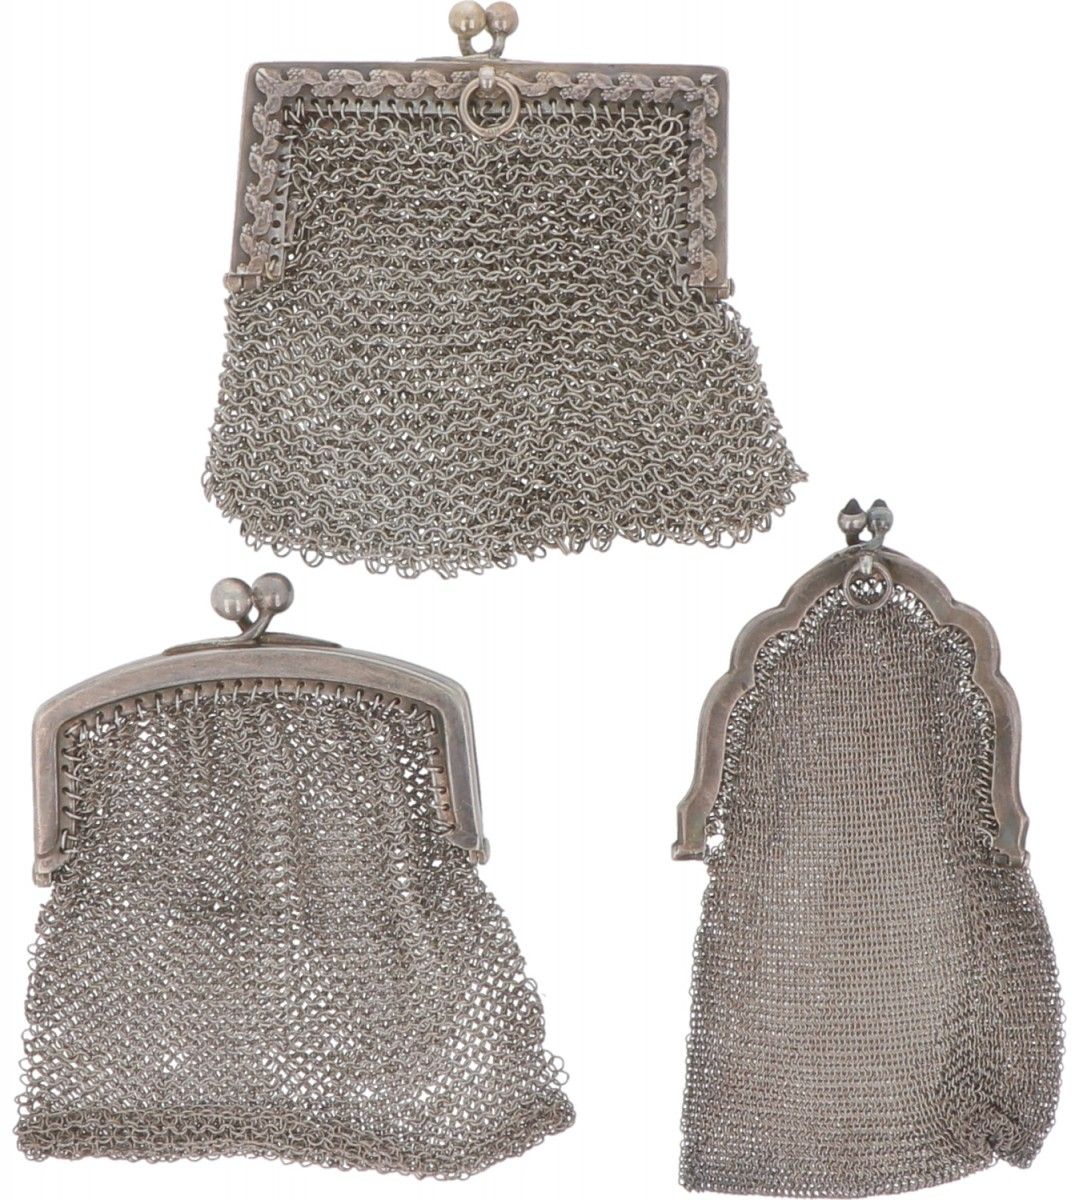 (3) Piece lot of silver bracket purses. Verschiedene Ausführungen, alle mit Kett&hellip;